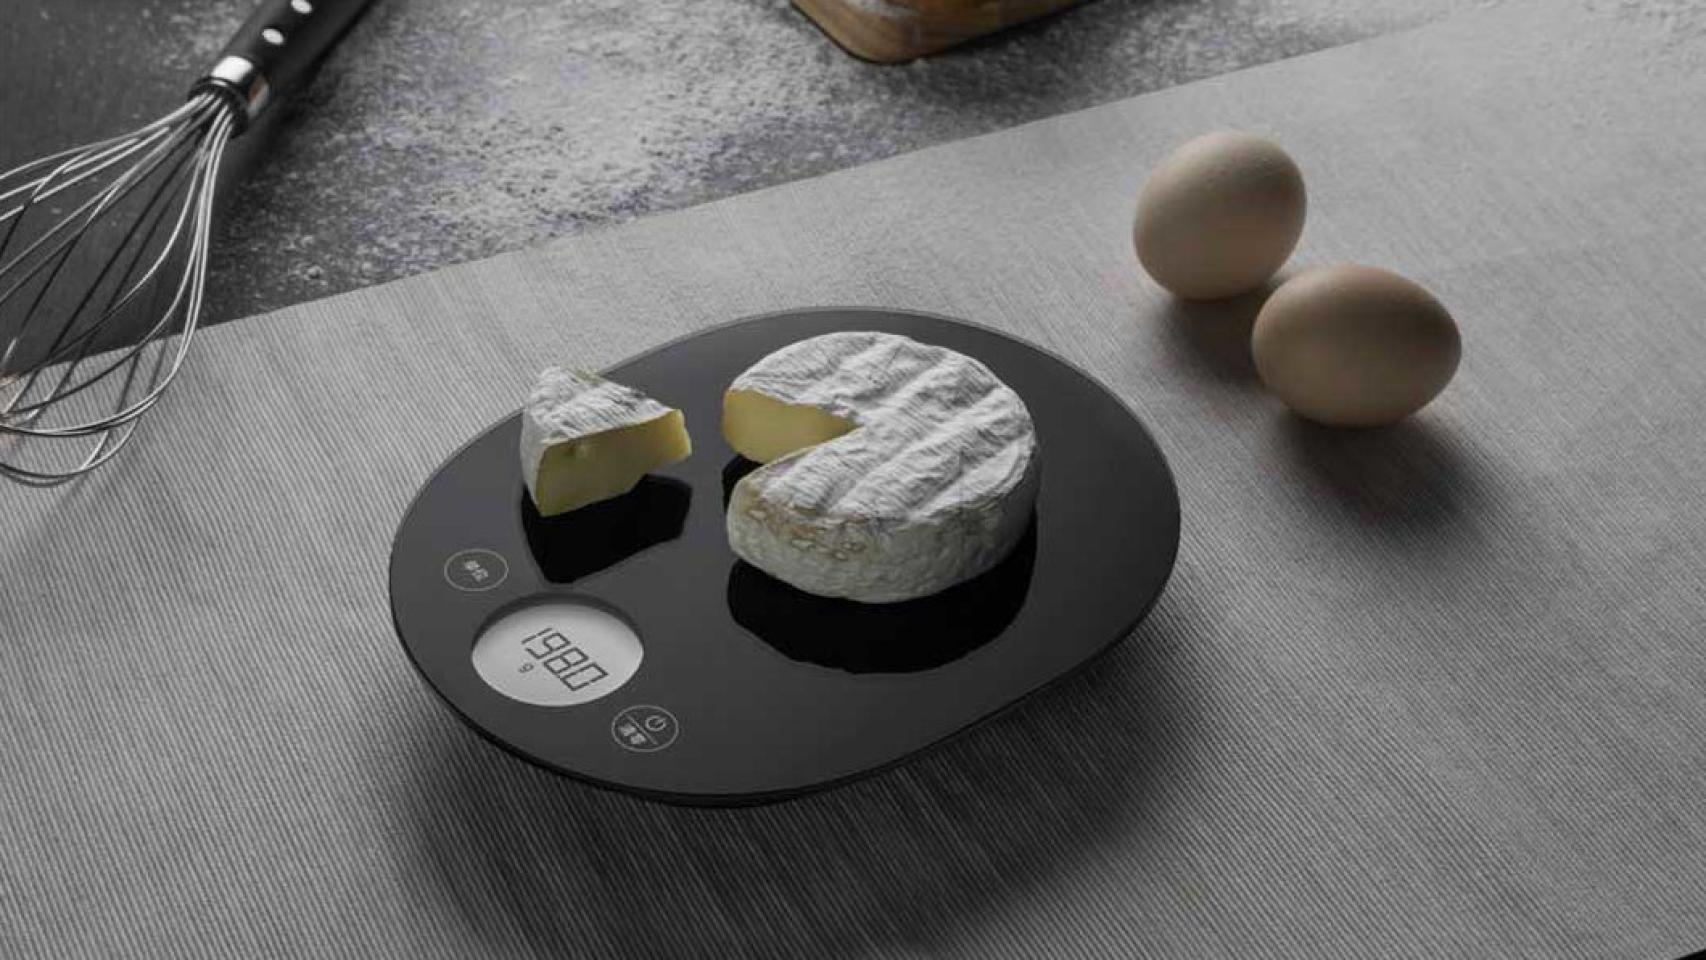 Xiaomi lanza un nuevo robot de cocina que podrás controlar desde el móvil, Gadgets